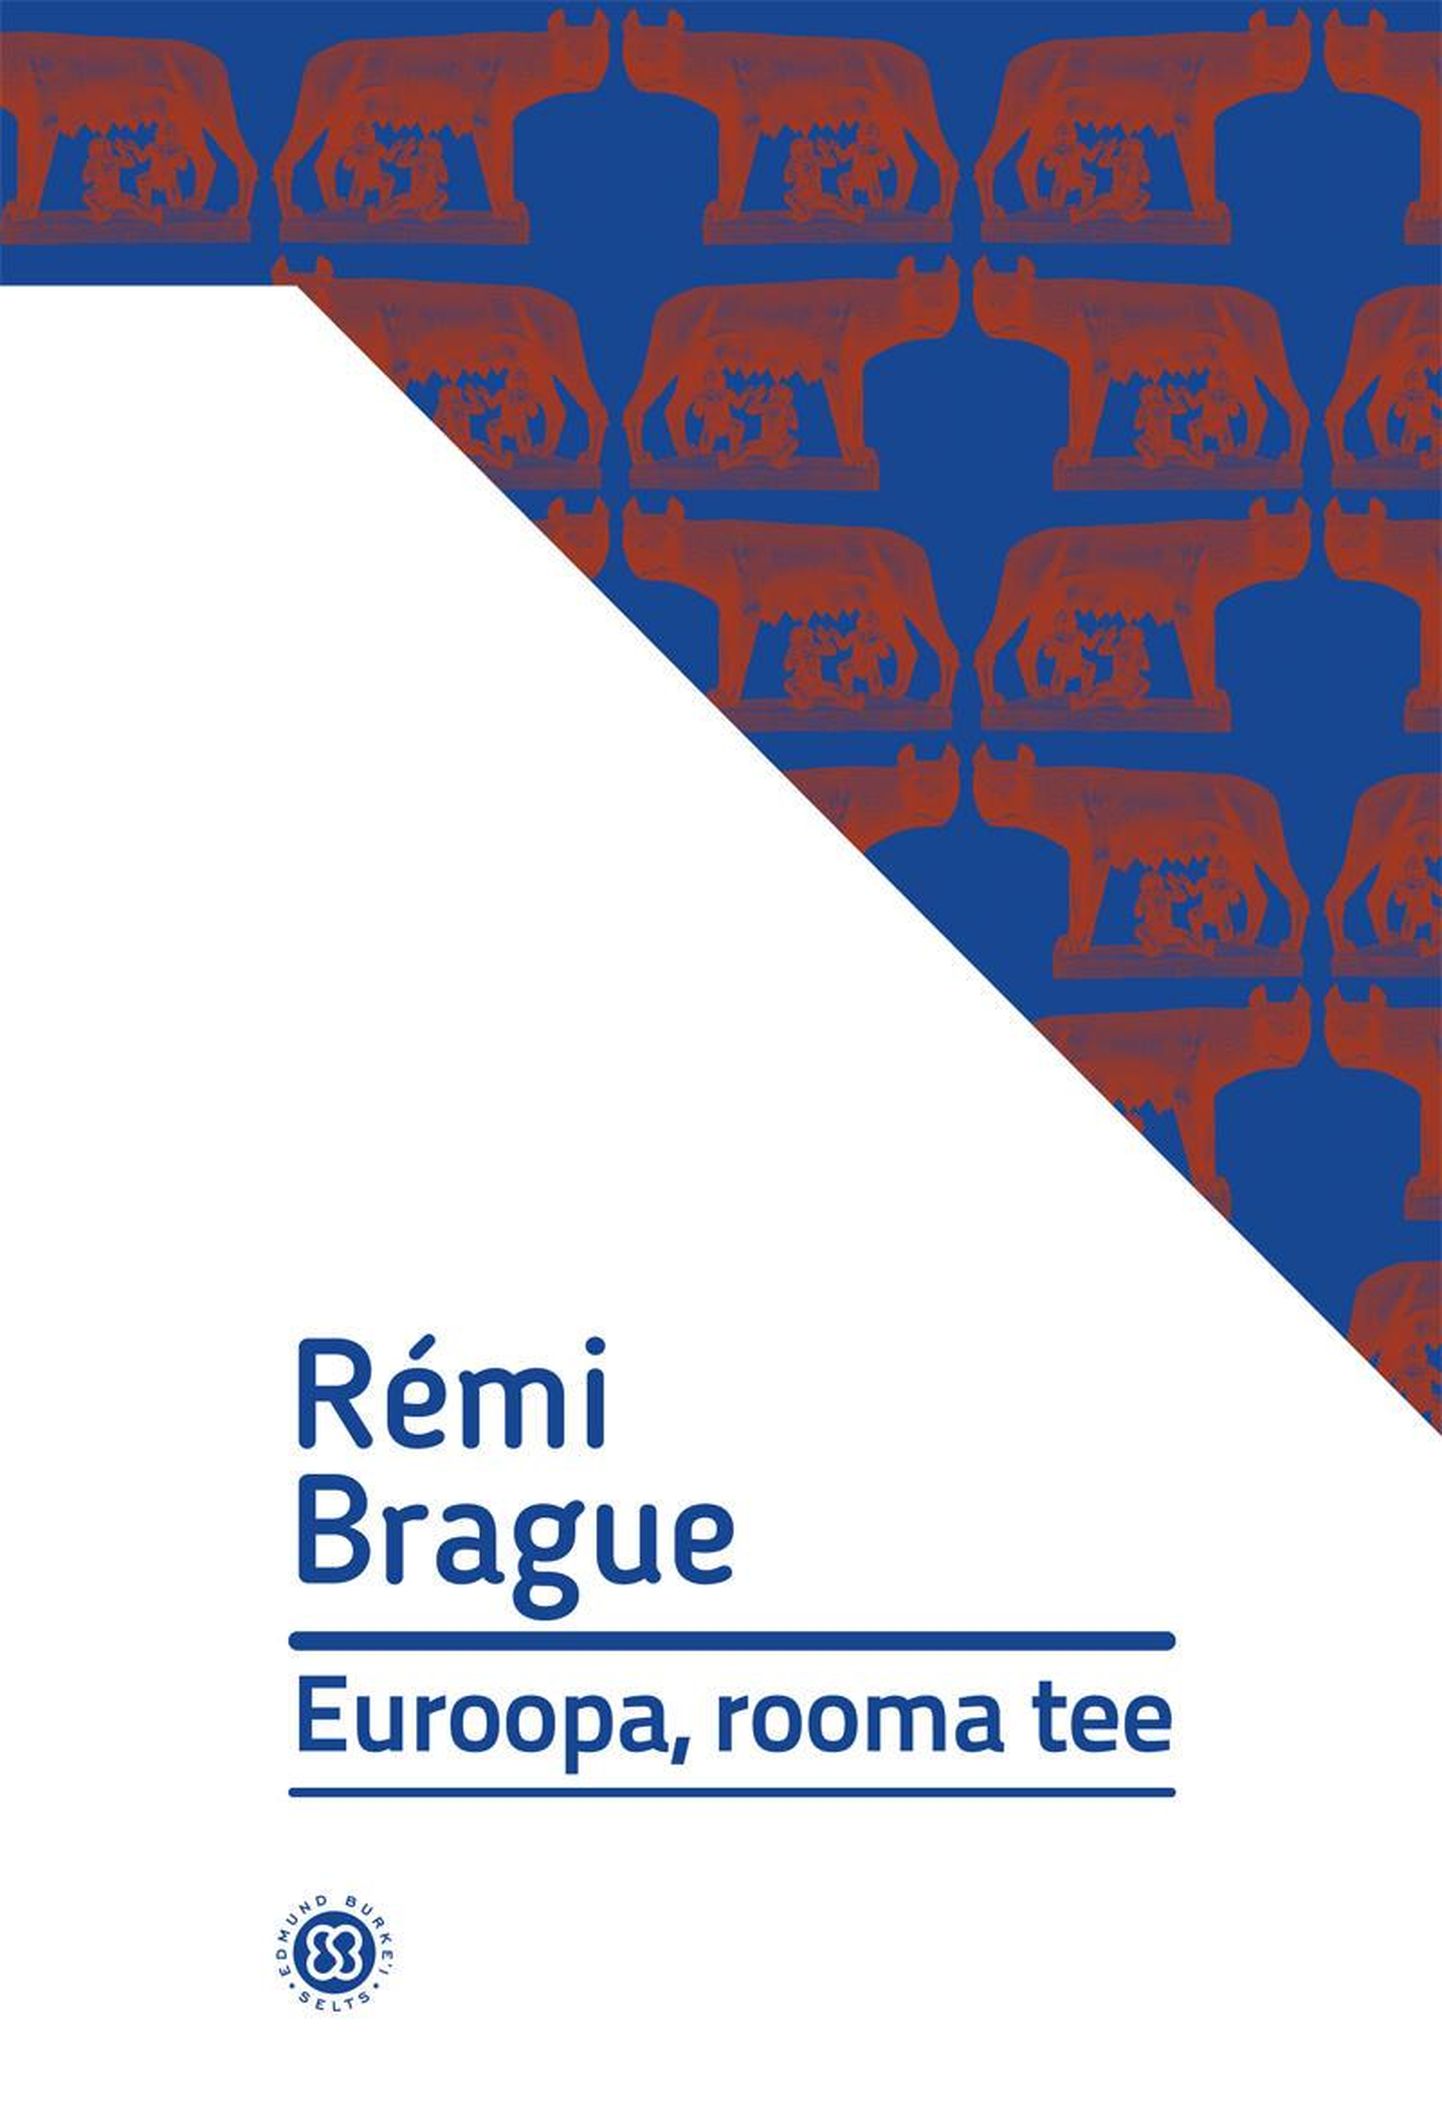 Rémi Brague, «Euroopa, rooma tee».